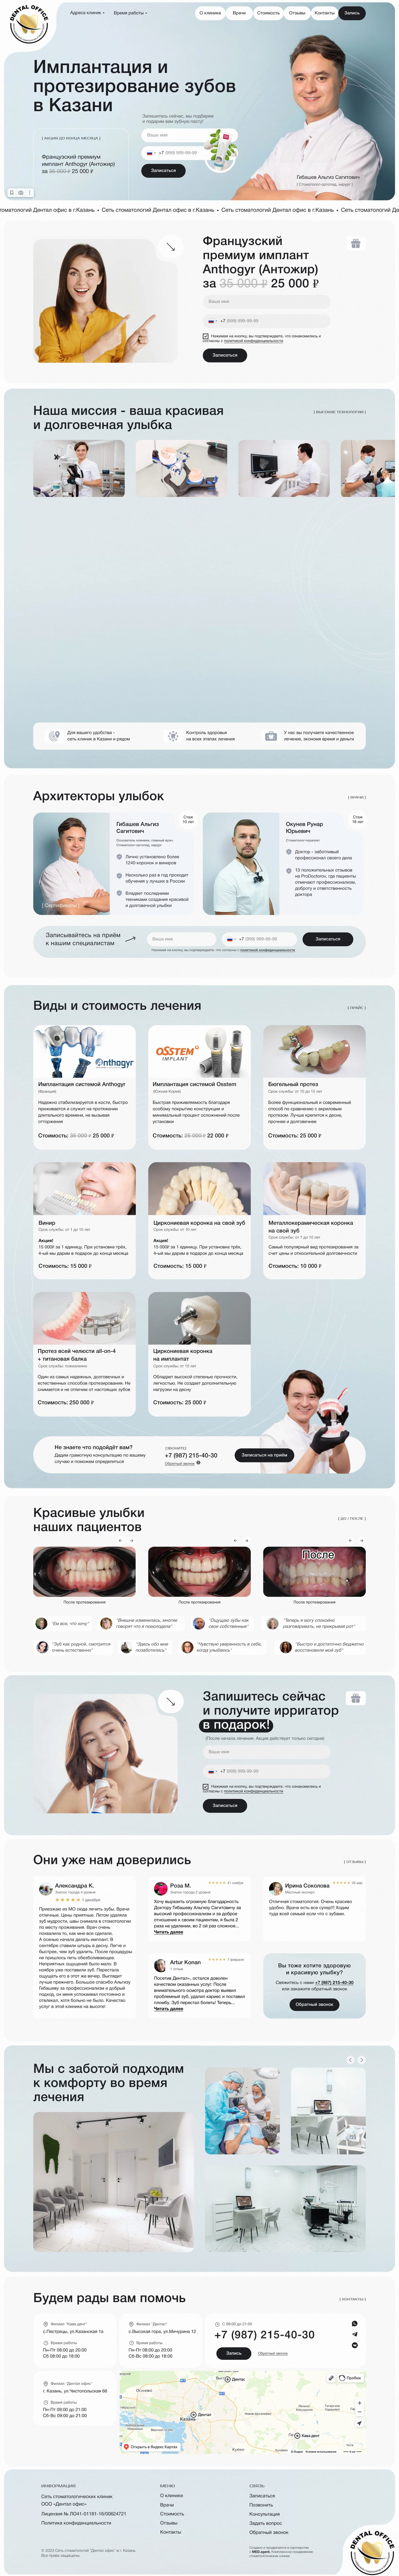 Пример посадочной страницы сайта по имплантации и протезированию зубов